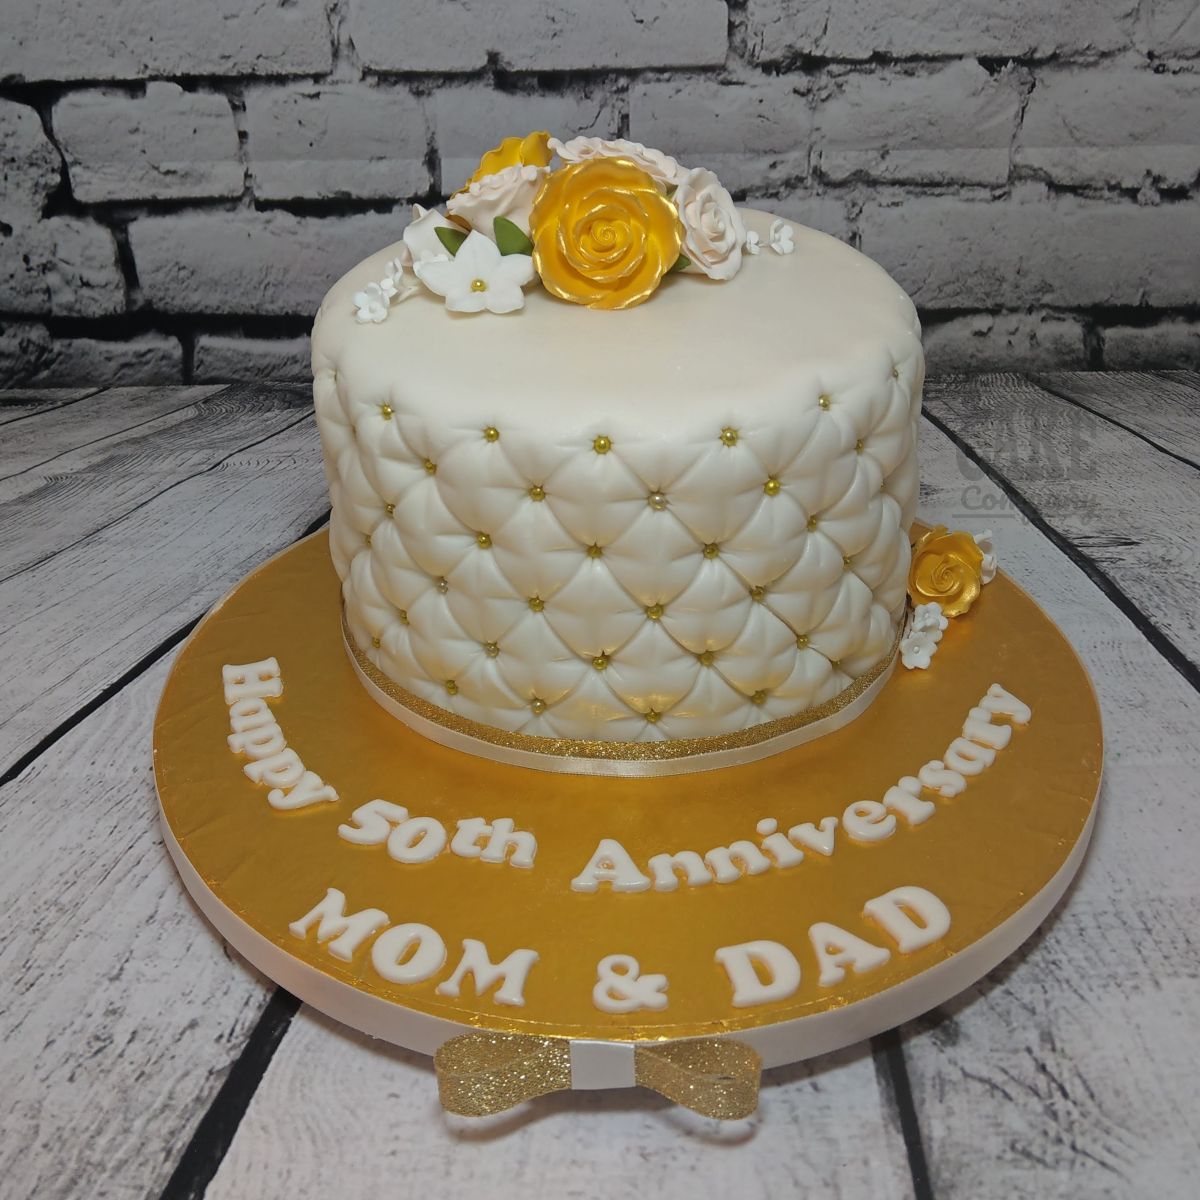 Golden Wedding Anniversary Cake | Back 2 Bake - YouTube